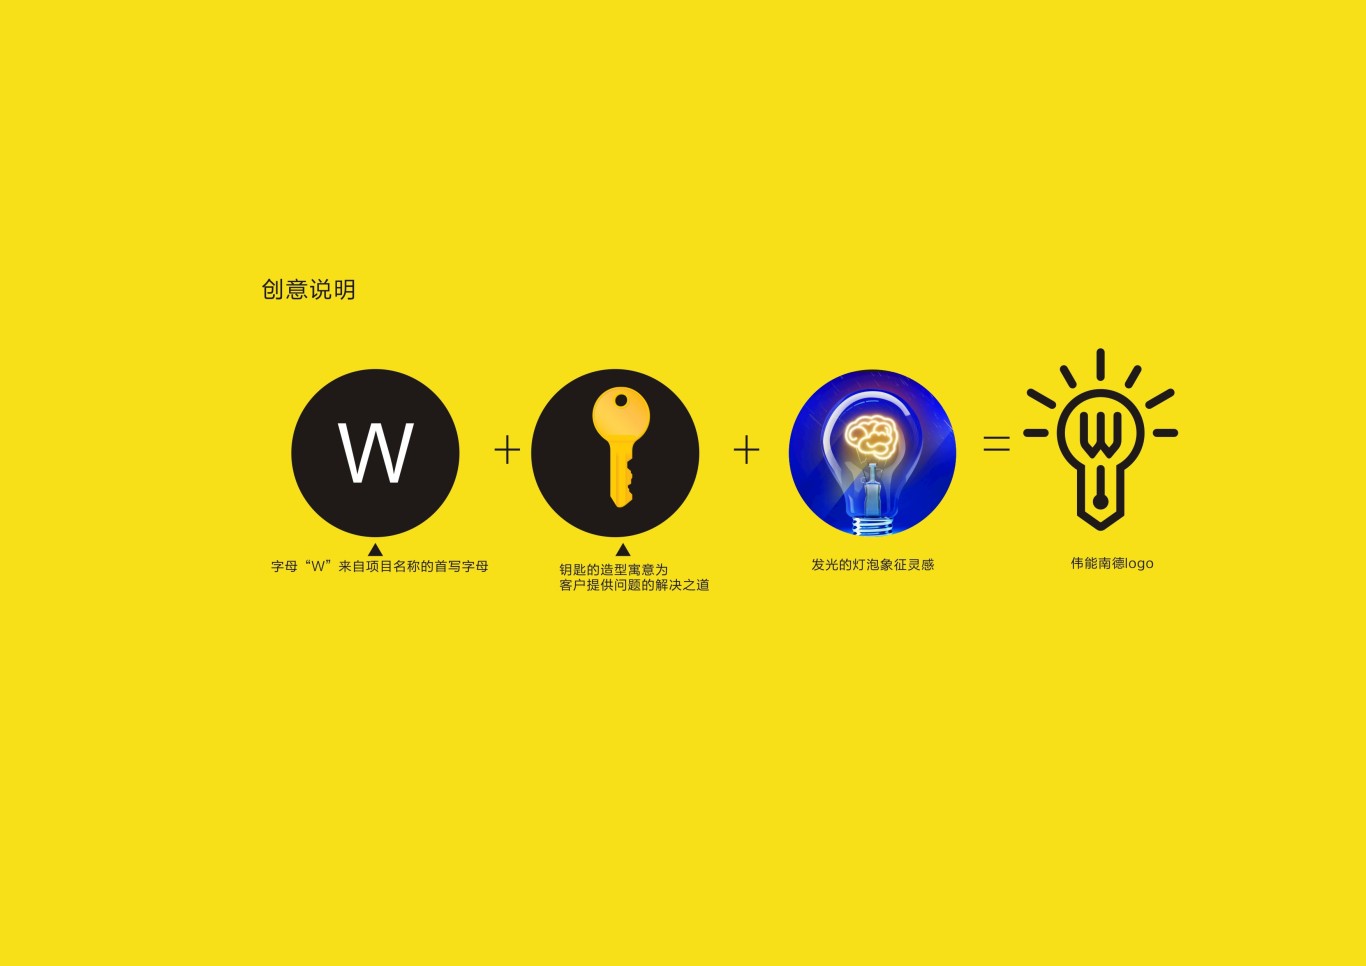 重庆伟能兰德品牌管理有限公司logo设计图0